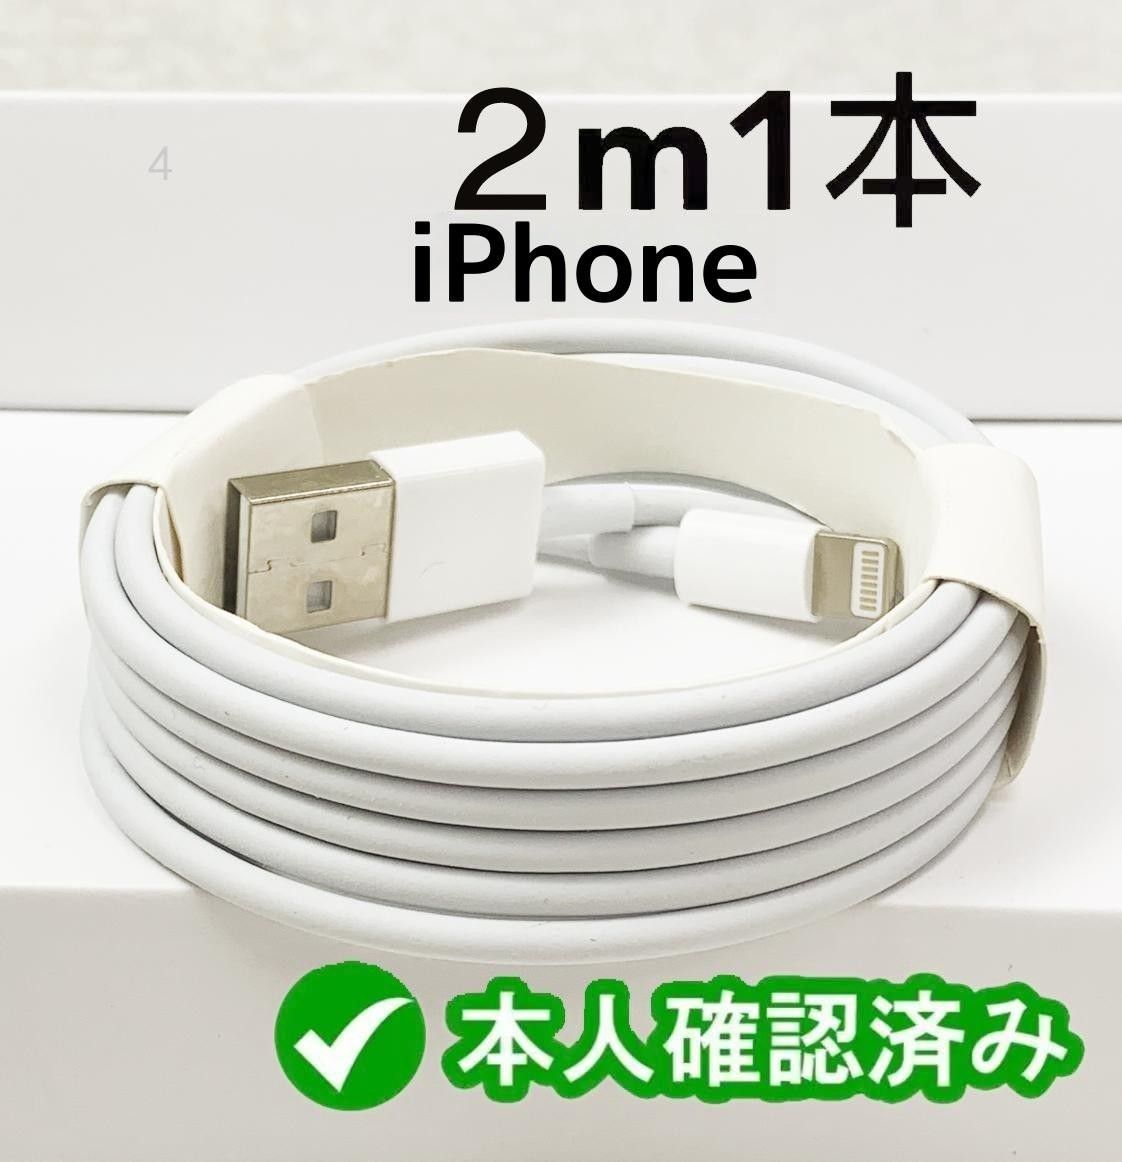 1本2m iPhone 充電器 Apple純正品質 白 データ転送ケーブル 新品 新品